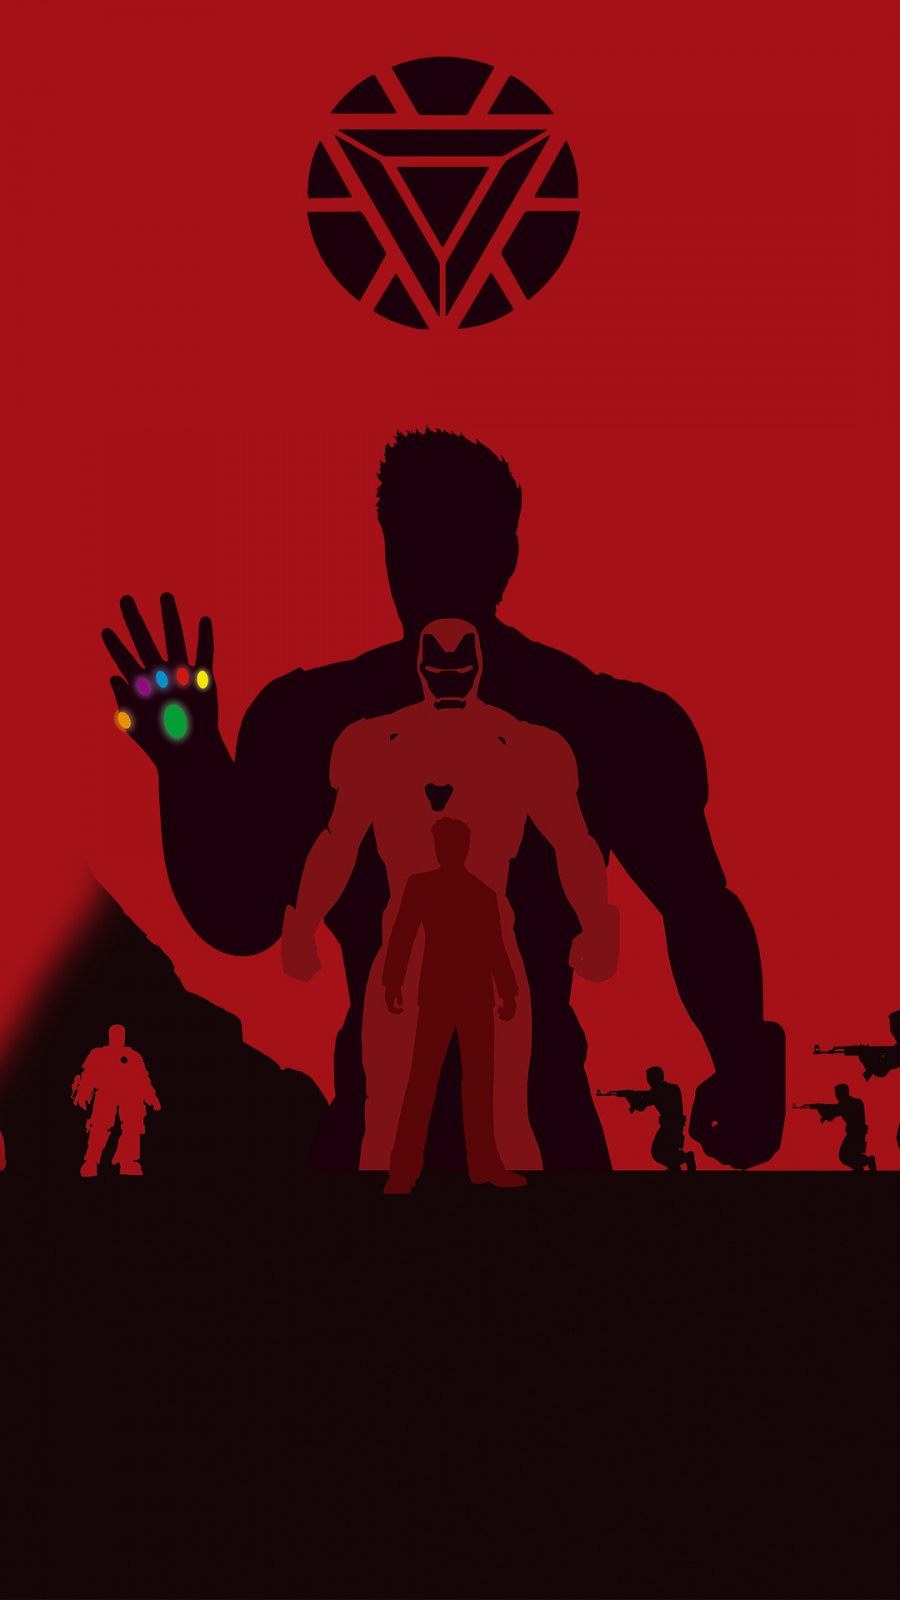 Iron Man Avengers Endgame 4k Minimalism IPhone Wallpaper - IPhone Wallpapers  : iPhone Wallpapers